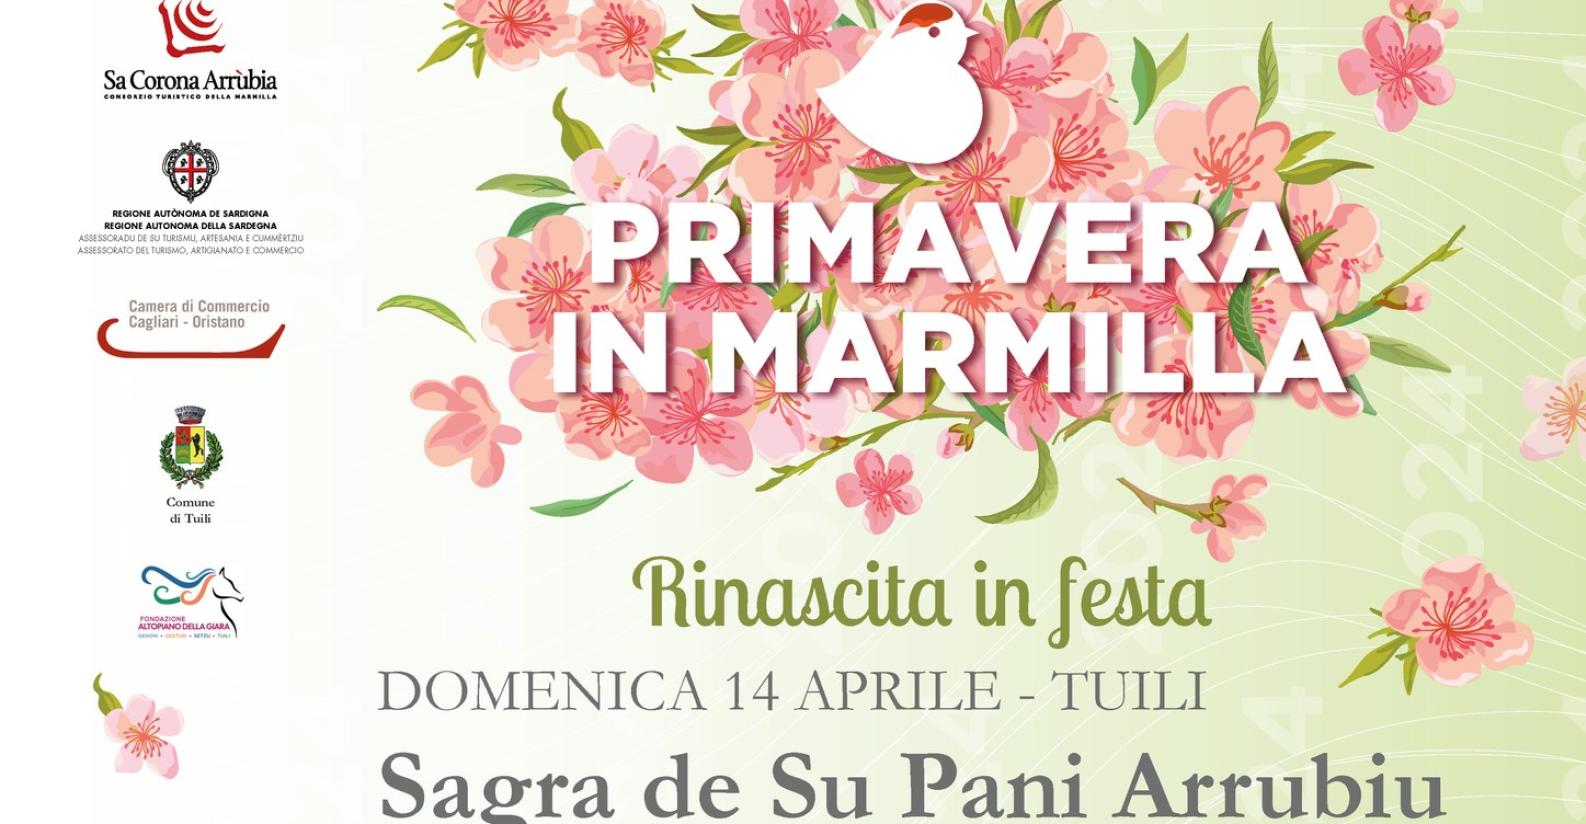 PrimaveraInMarmilla_Tuili_24_locandina